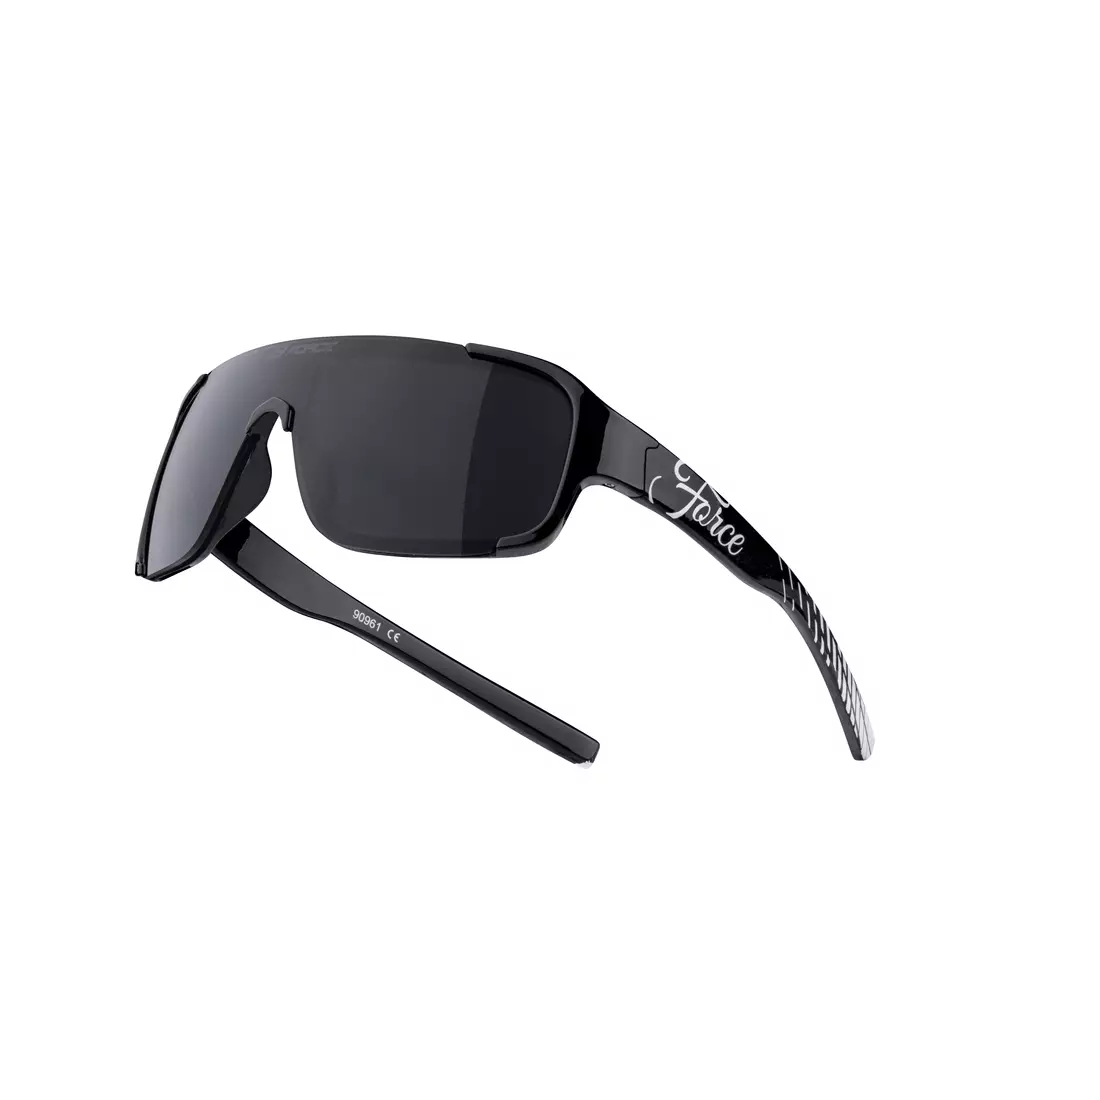 FORCE Damen-/Jugend-Sonnenbrille CHIC, schwarz-weiß, schwarze Gläser 90961